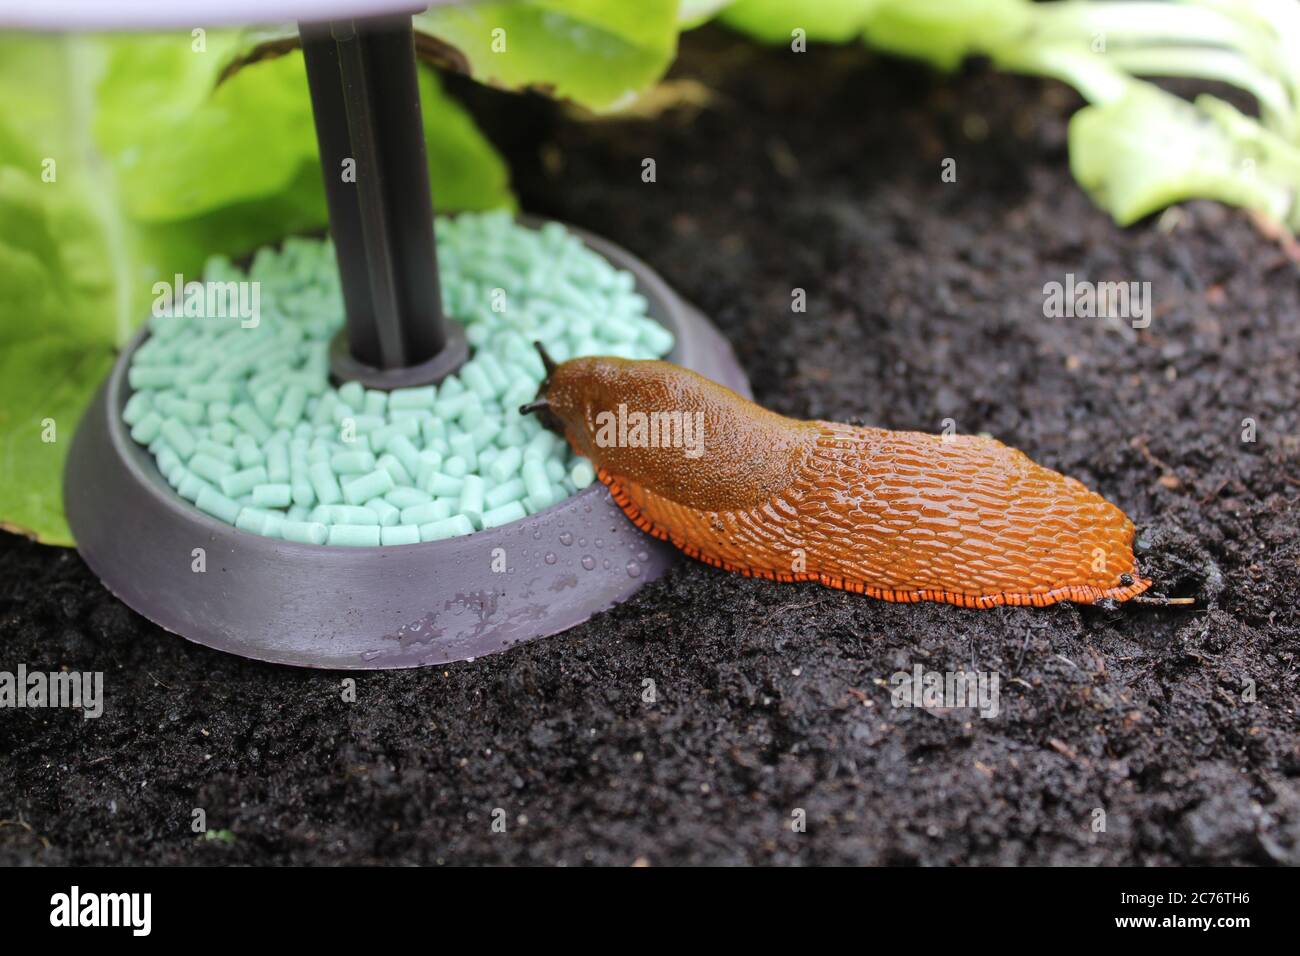 L'image montre un escargot sur un piège à escargot Photo Stock - Alamy